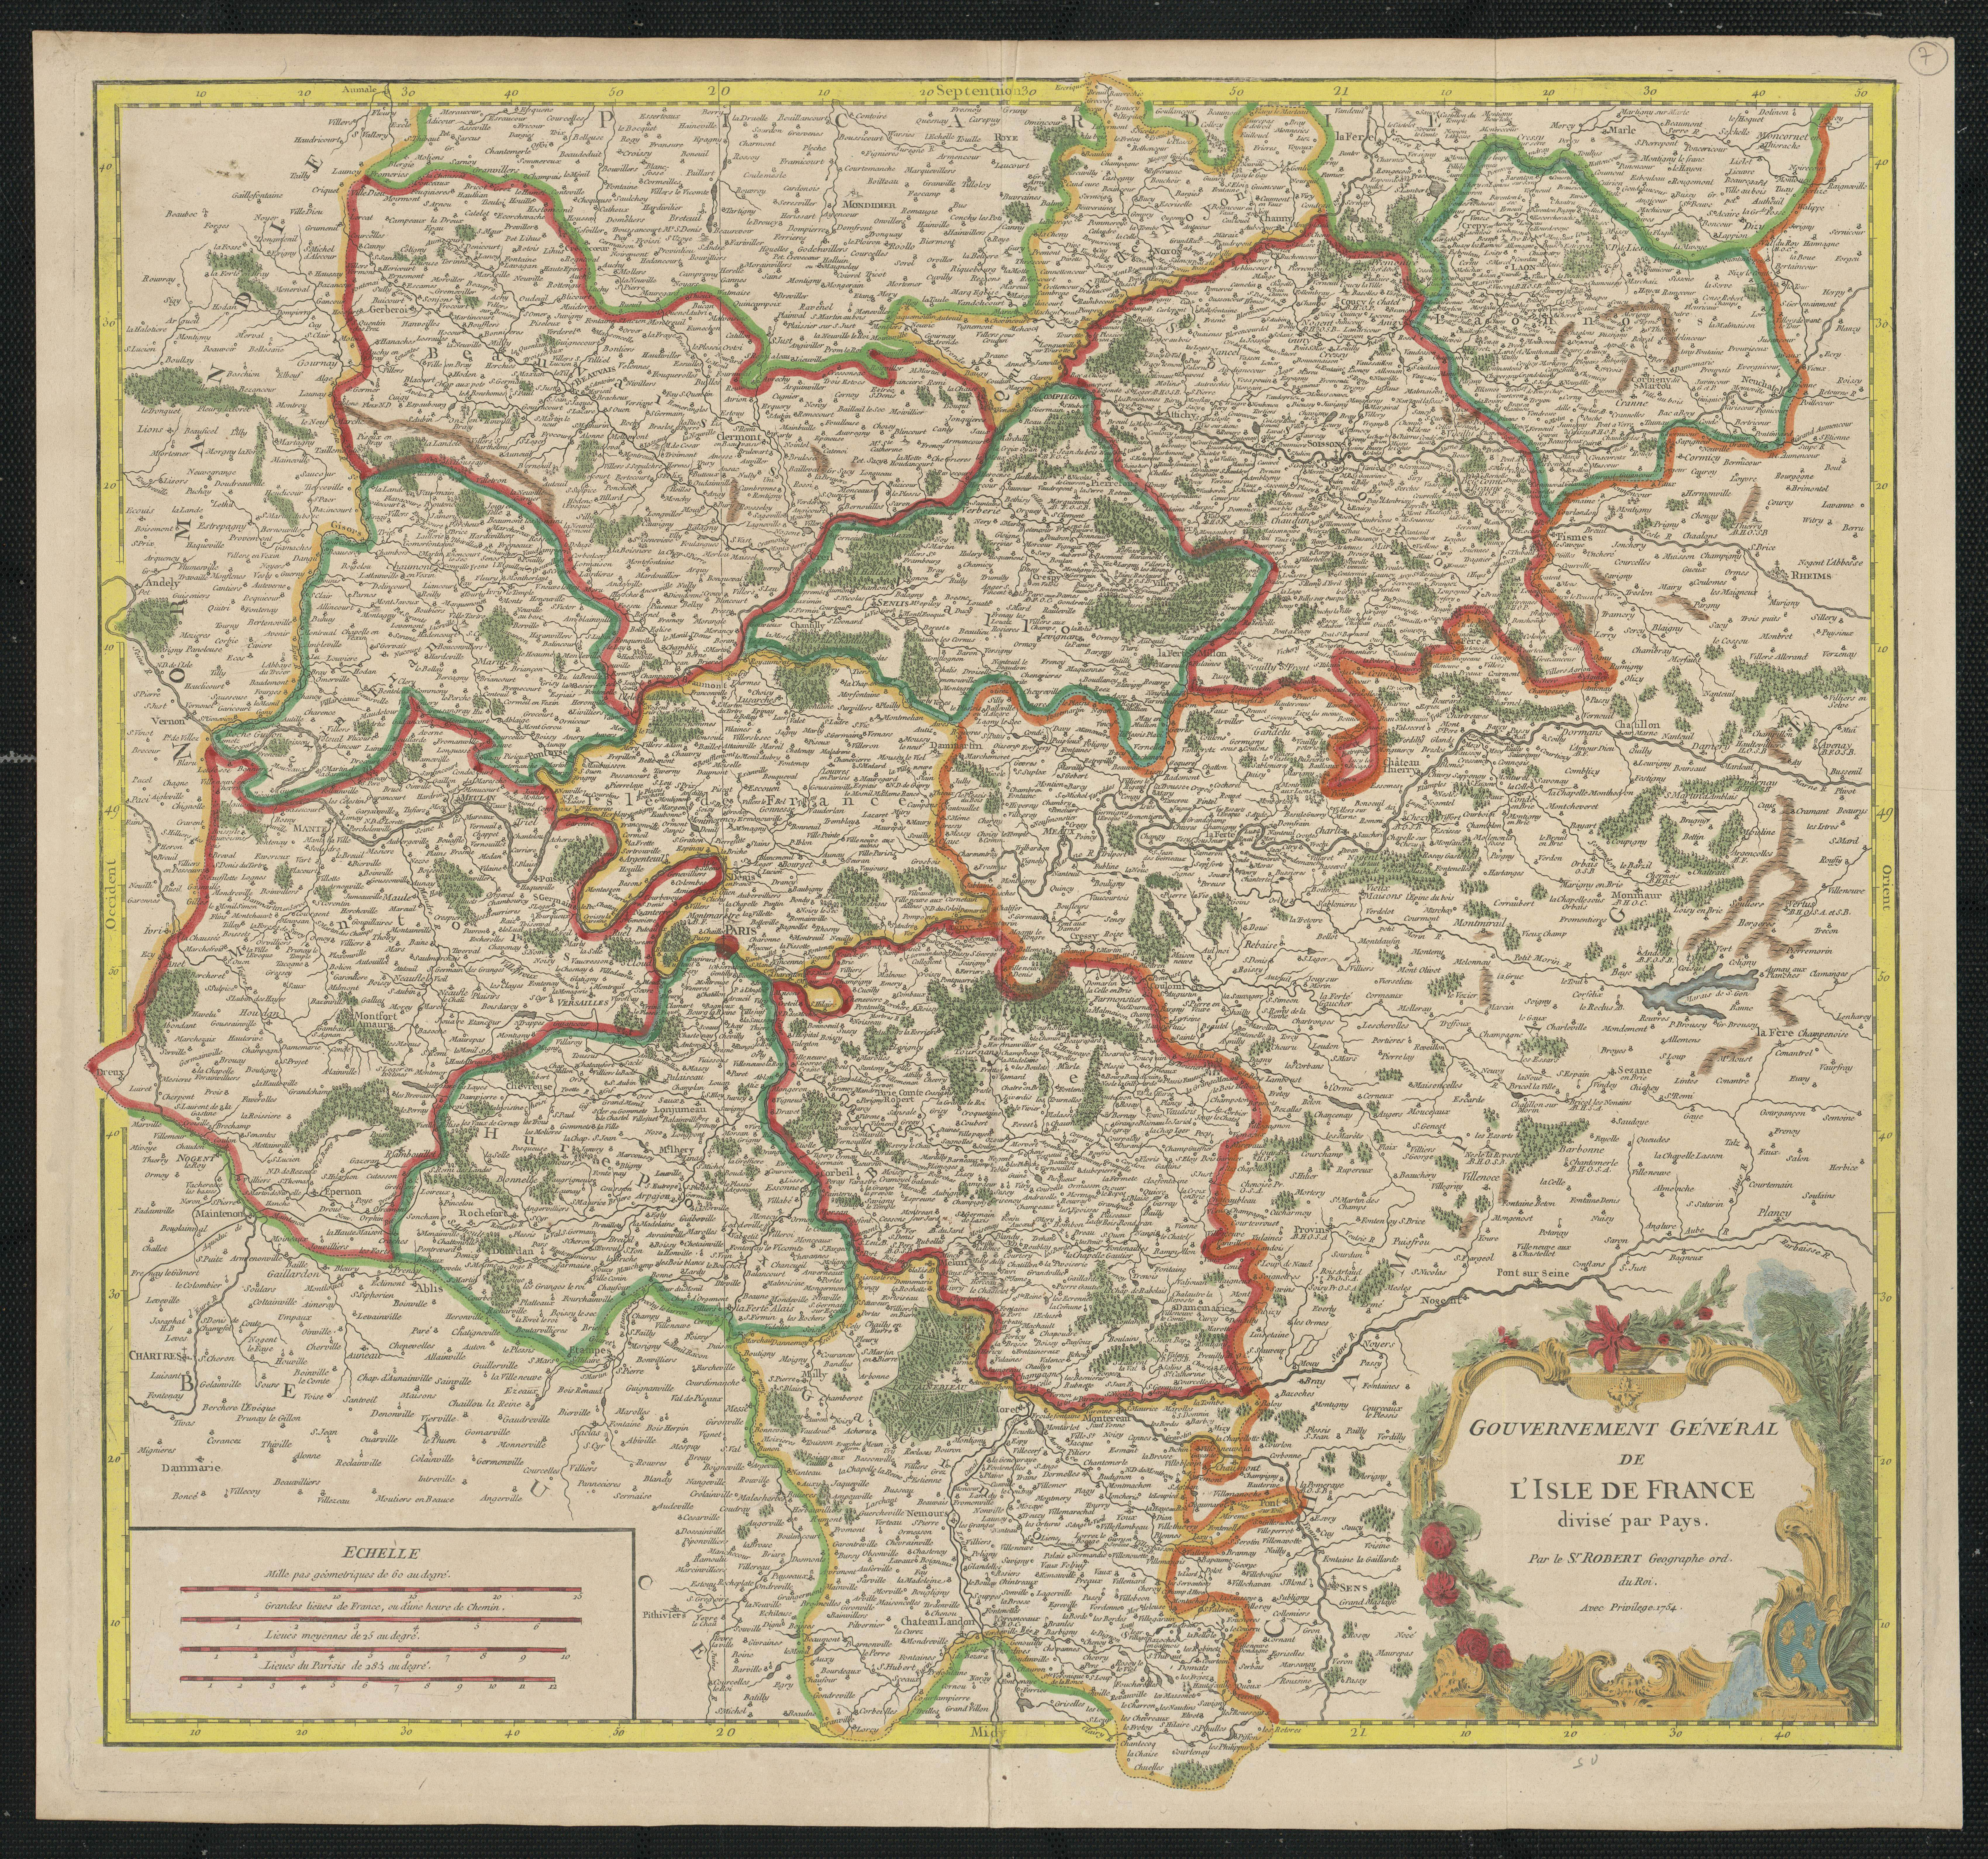 Gouvernement Général de l'Isle de France divisé par Pays. 1754.